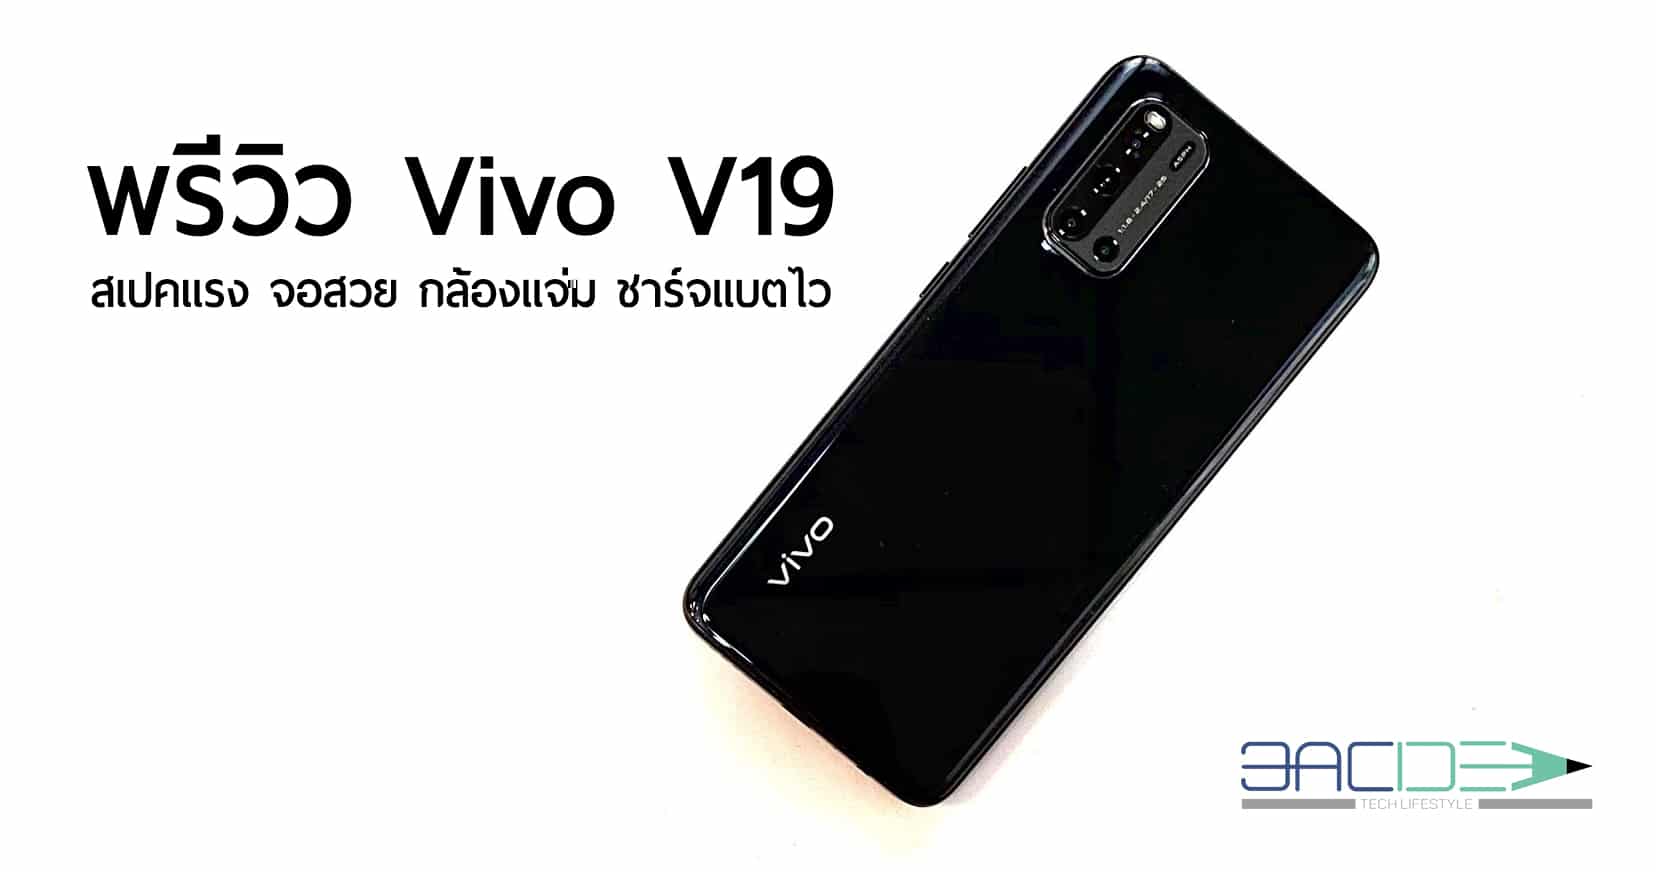 พรีวิว Vivo V19 หน้าจอ Ultra O Screen กล้องหน้าคู่ 32 MP กล้องหลัง 4 ตัว พร้อม AI Super Night Mode ชาร์จแบตไว 33 W 1